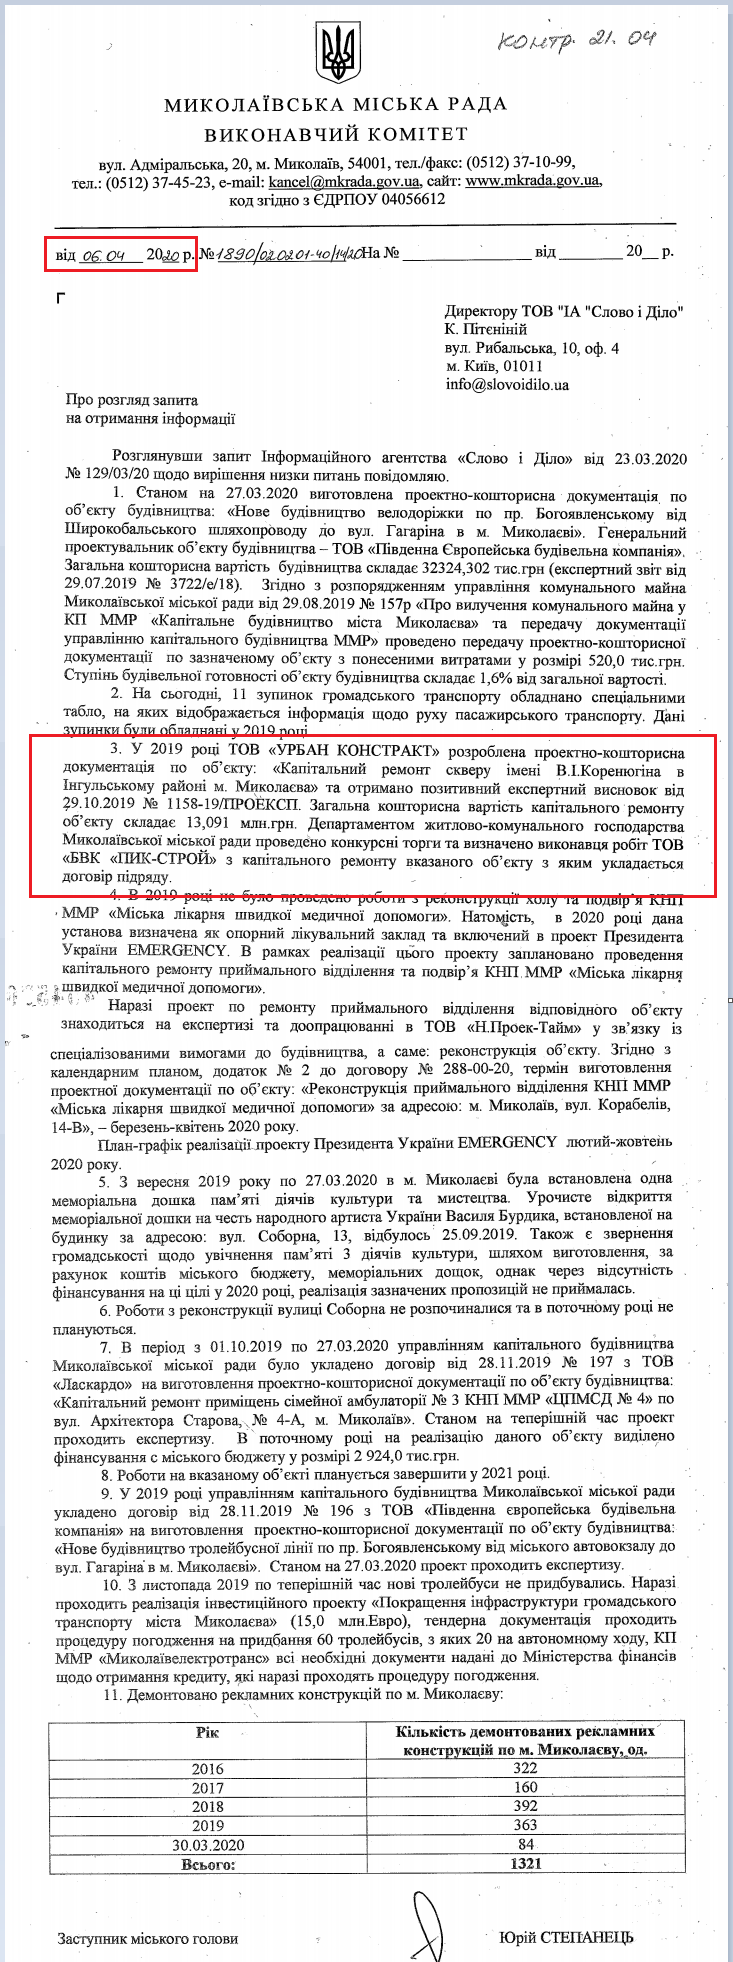 Лист Миколаївської МР від 4 квітня 2020 року